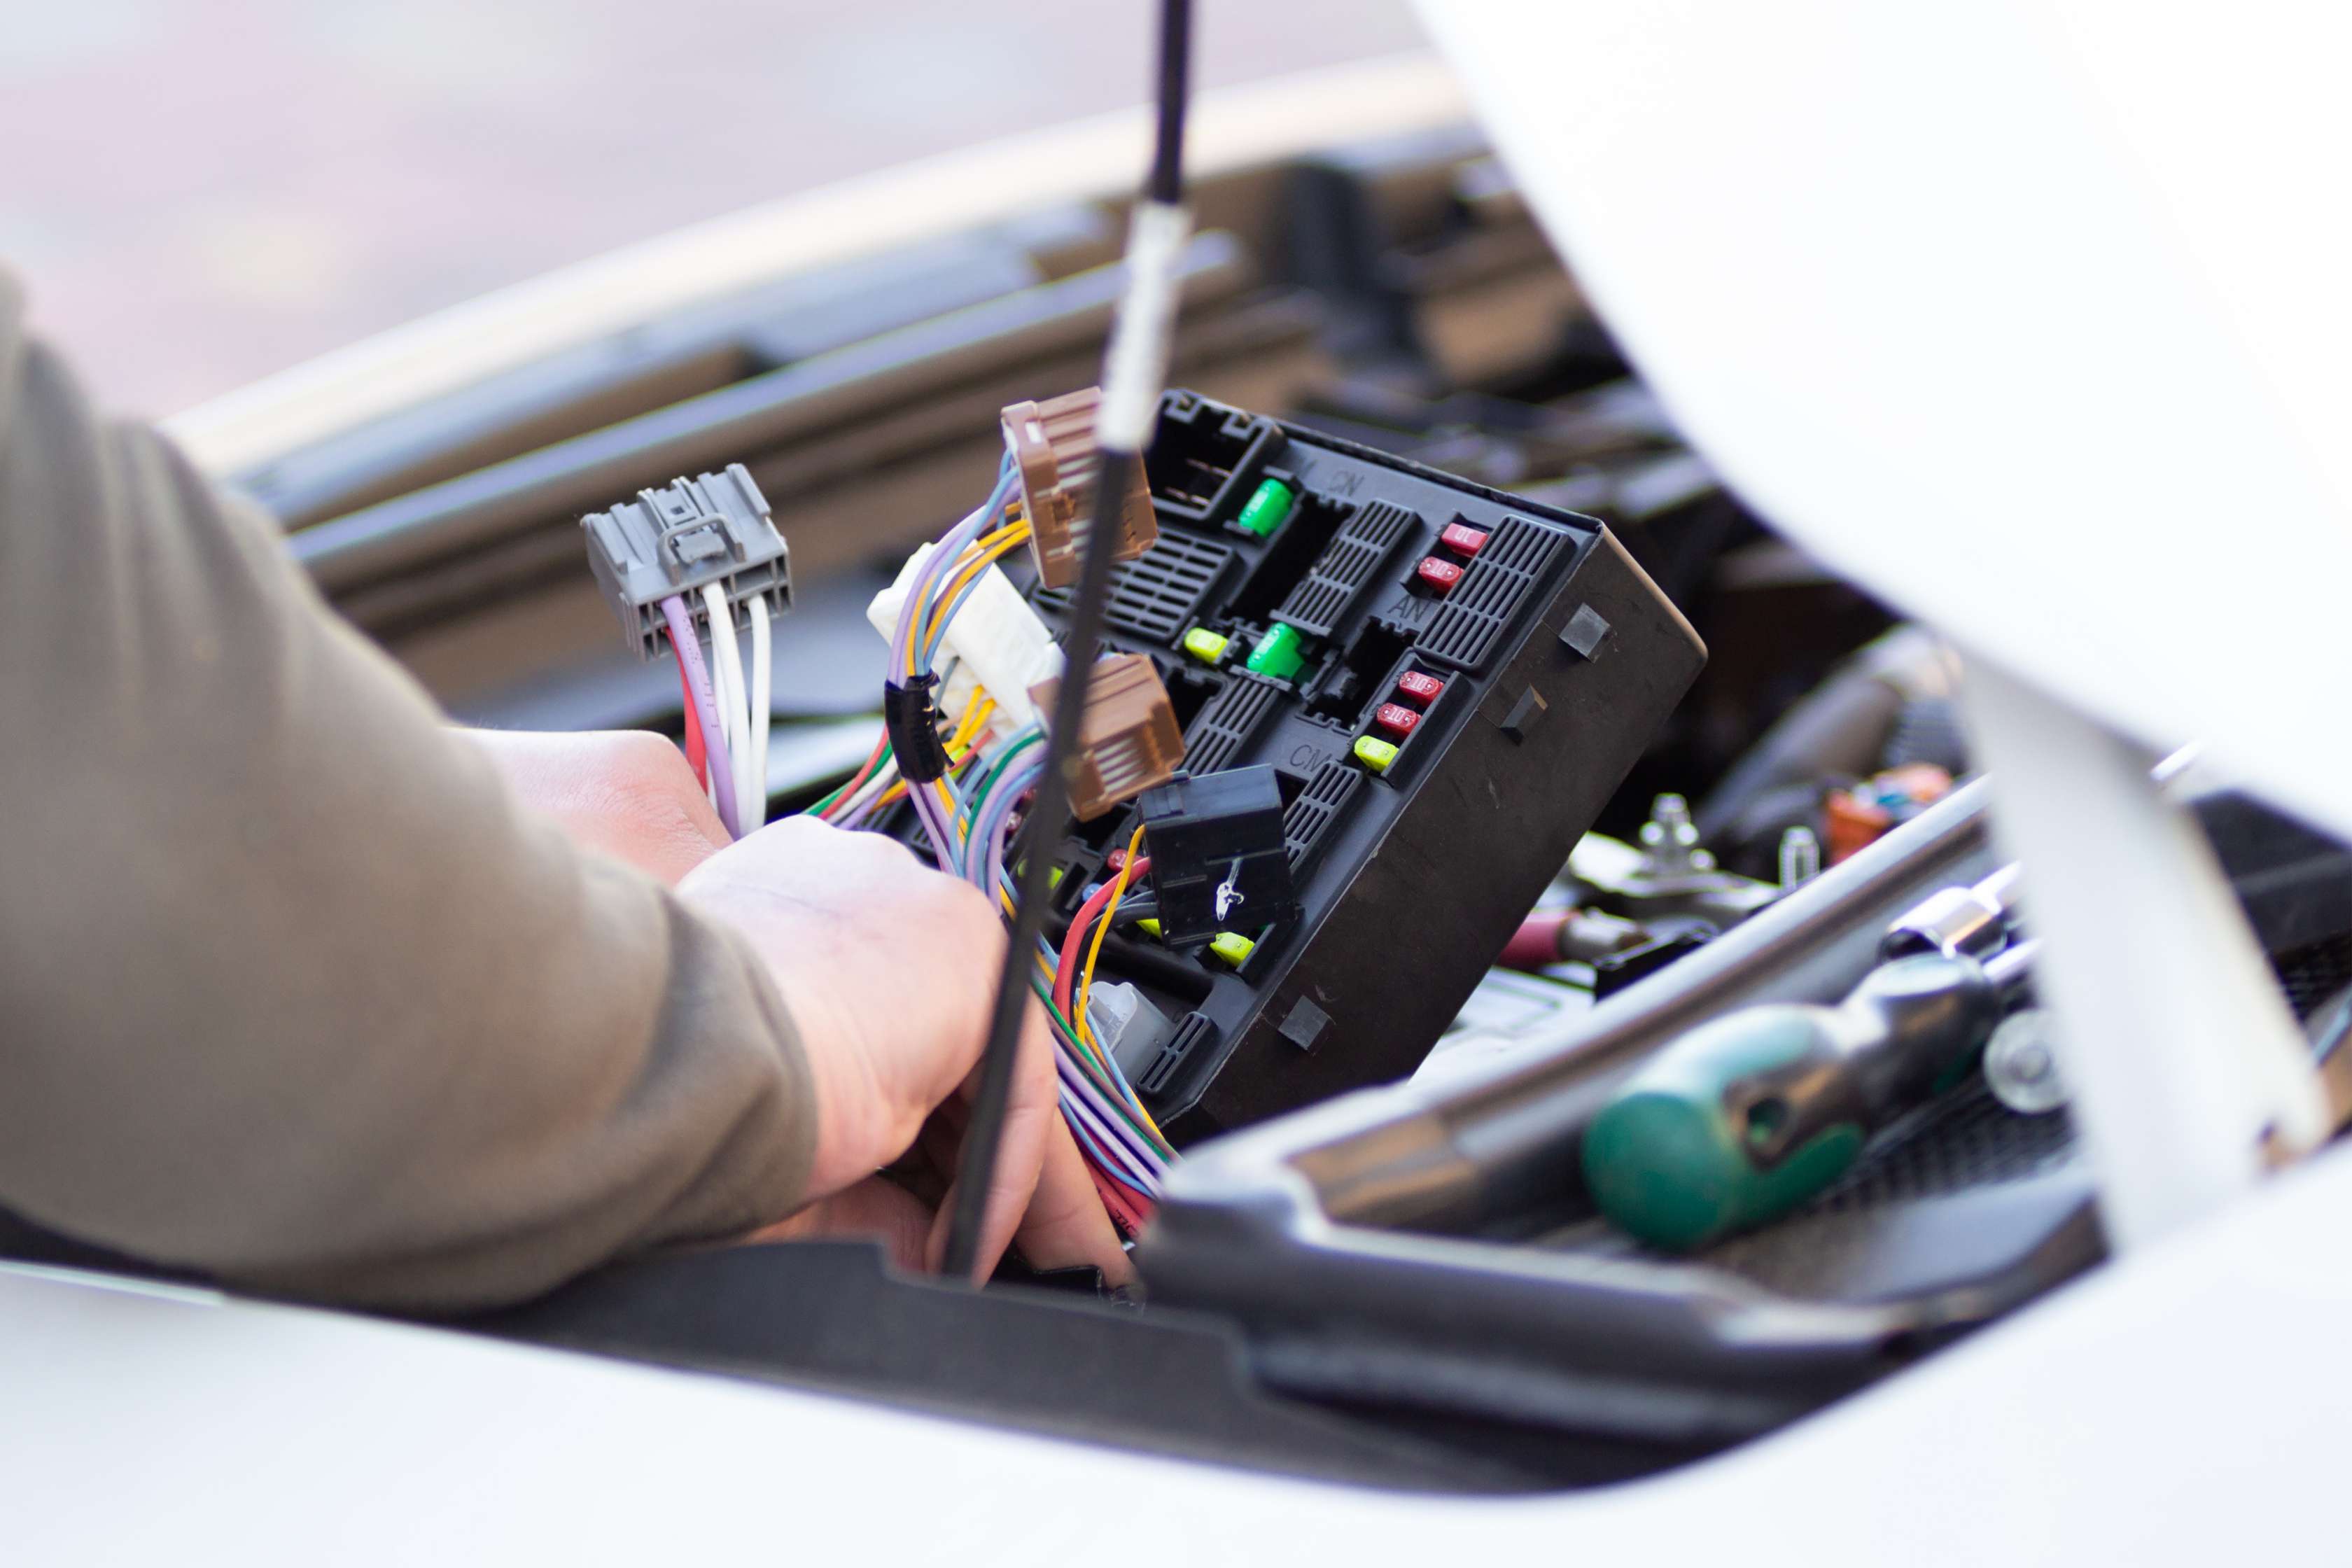 E-Auto Akku-Versicherung: So schützen Allianz Vollkasko und Teilkasko Ihre Elektroauto-Batterie